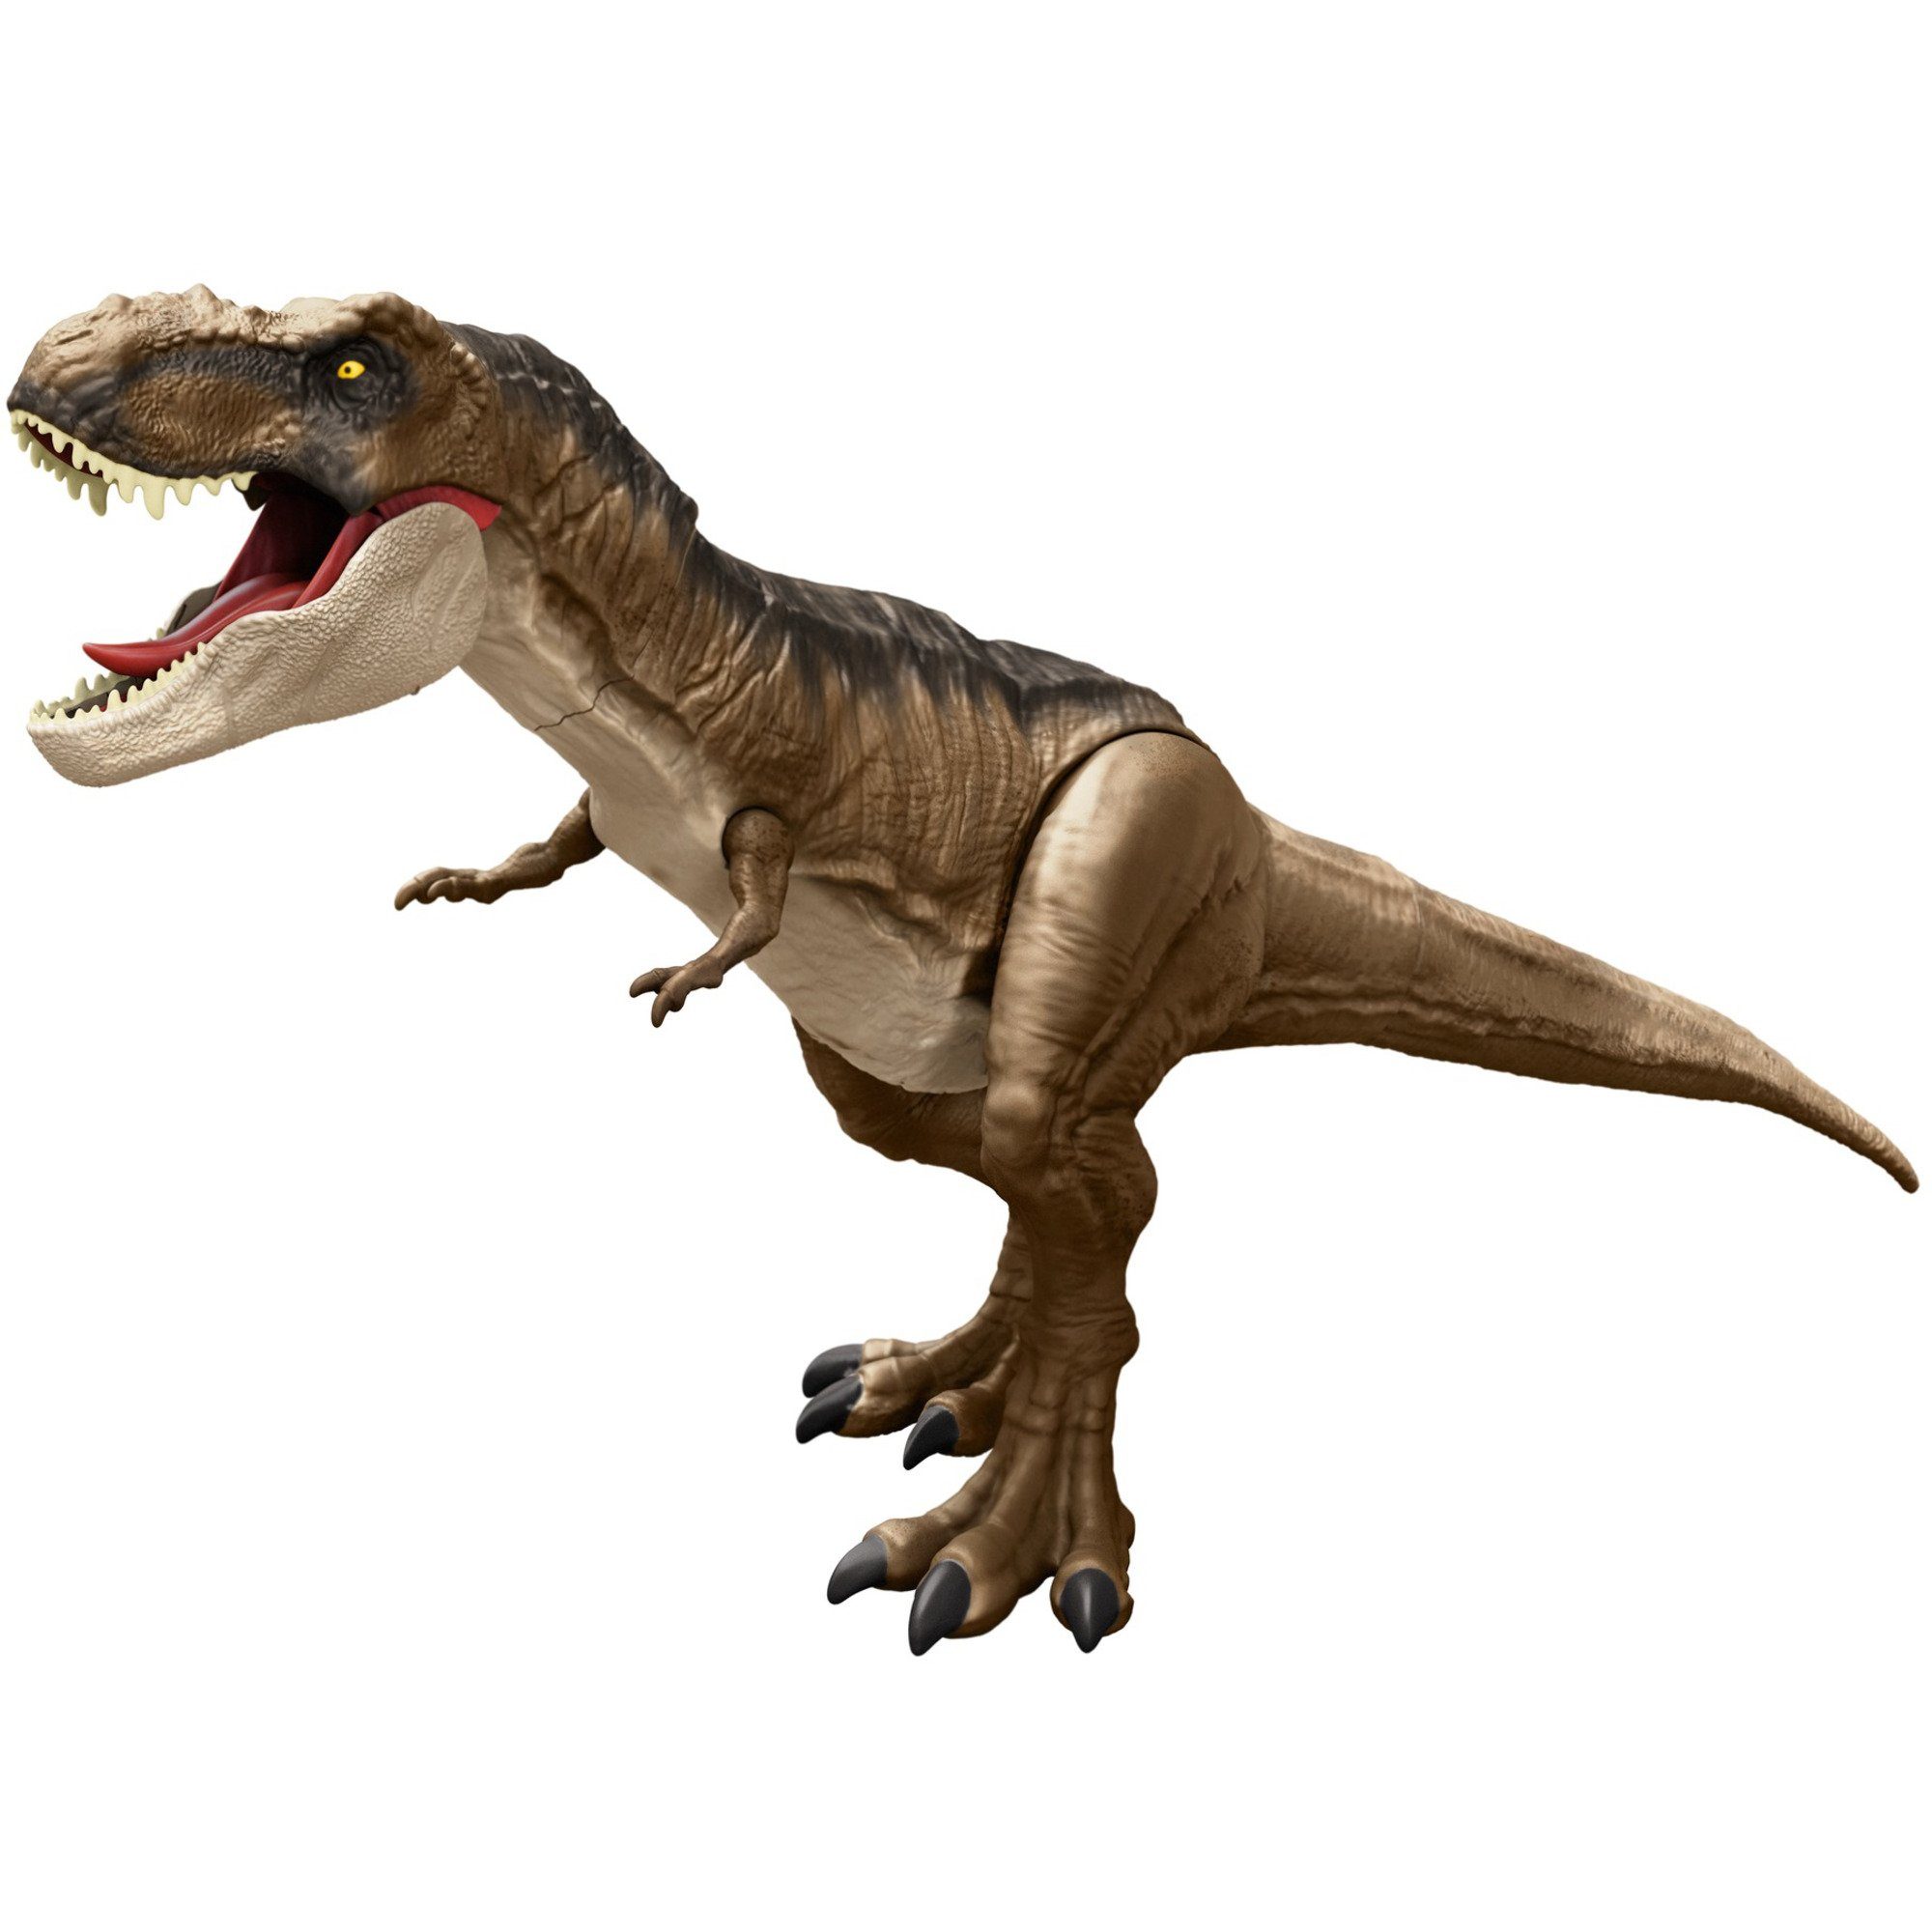 Mattel® Spielfigur Jurassic World Riesendino Tyrannosaurus-Rex